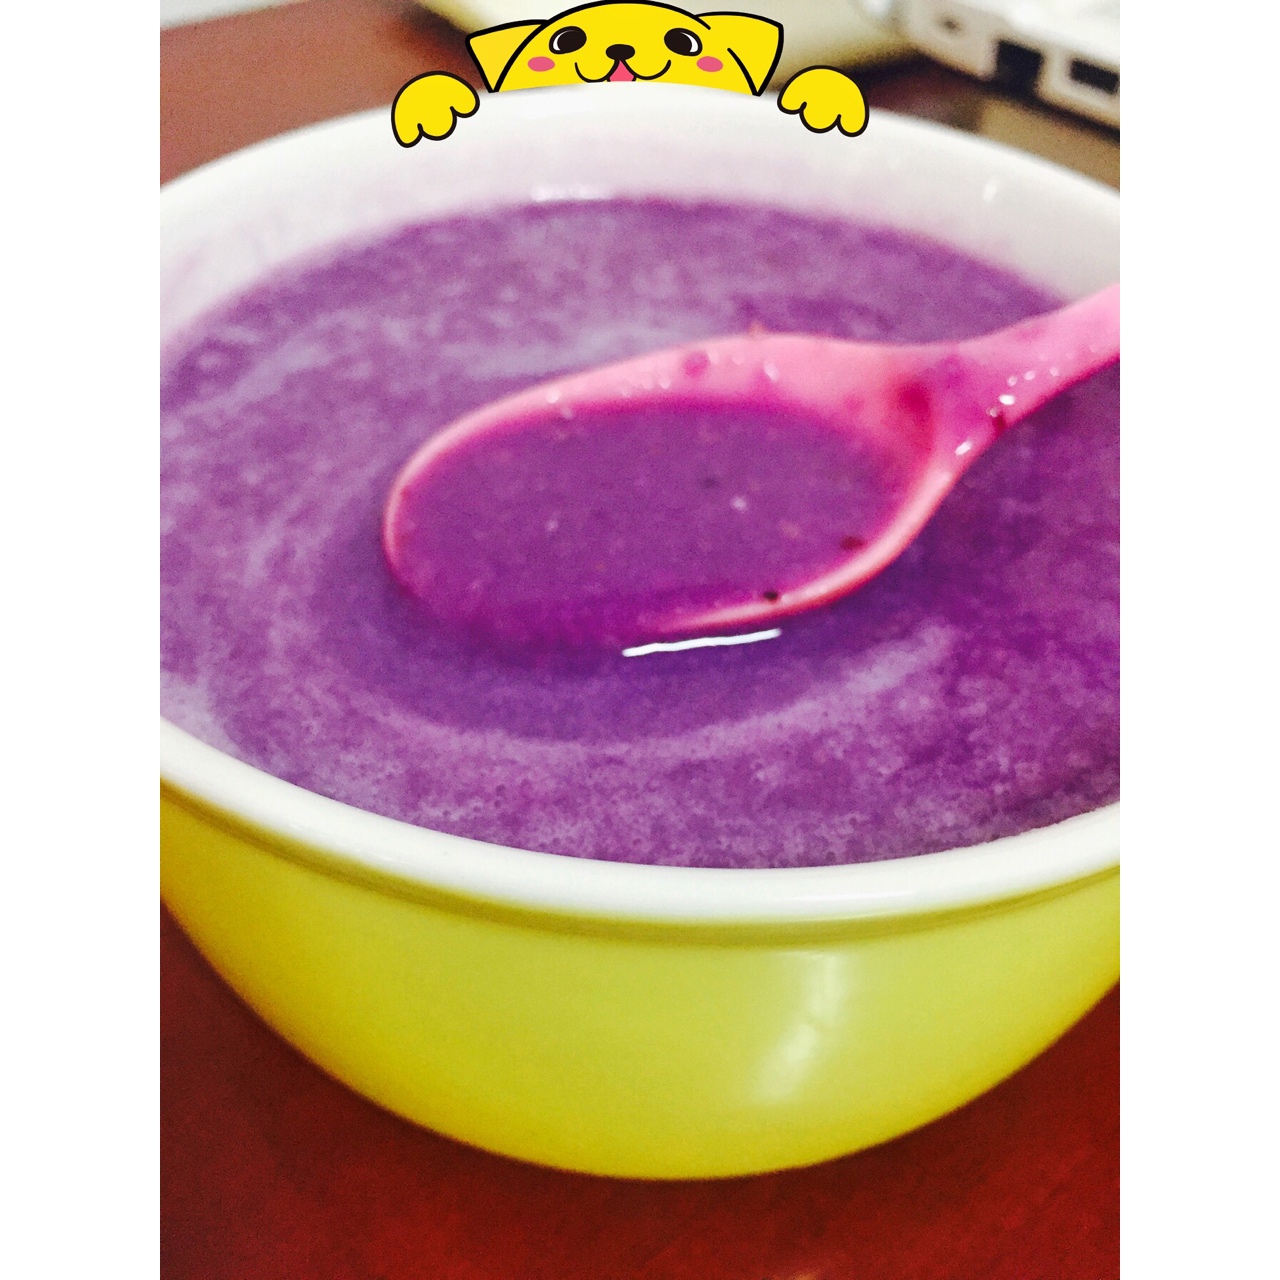 紫薯牛奶